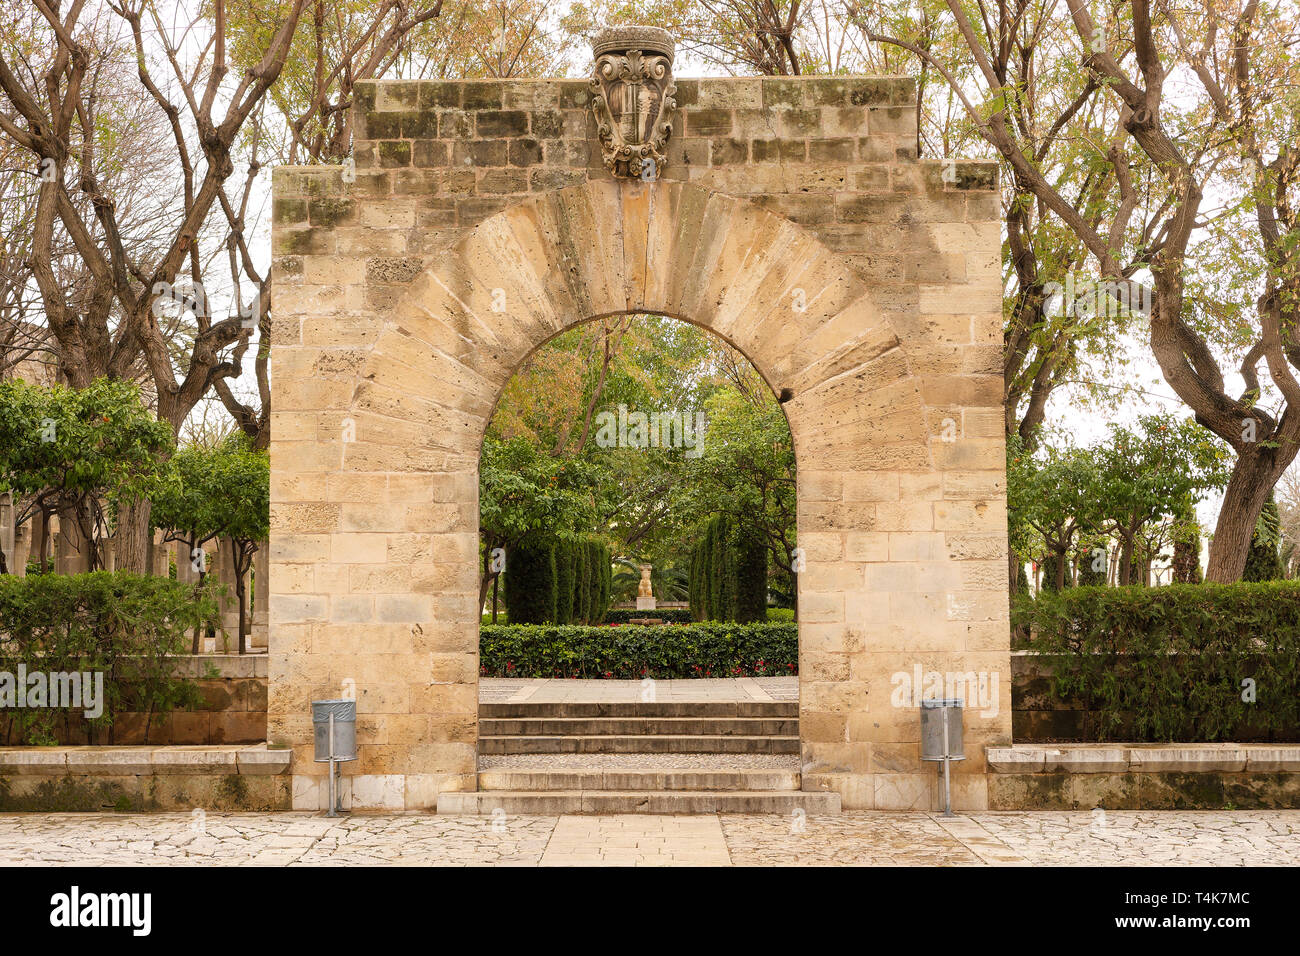 Palma de Mallorca, Spagna - 19 Marzo 2019 : giardino pubblico e arte parco nel centro della città vecchia di Palma accanto al palazzo dei re Foto Stock